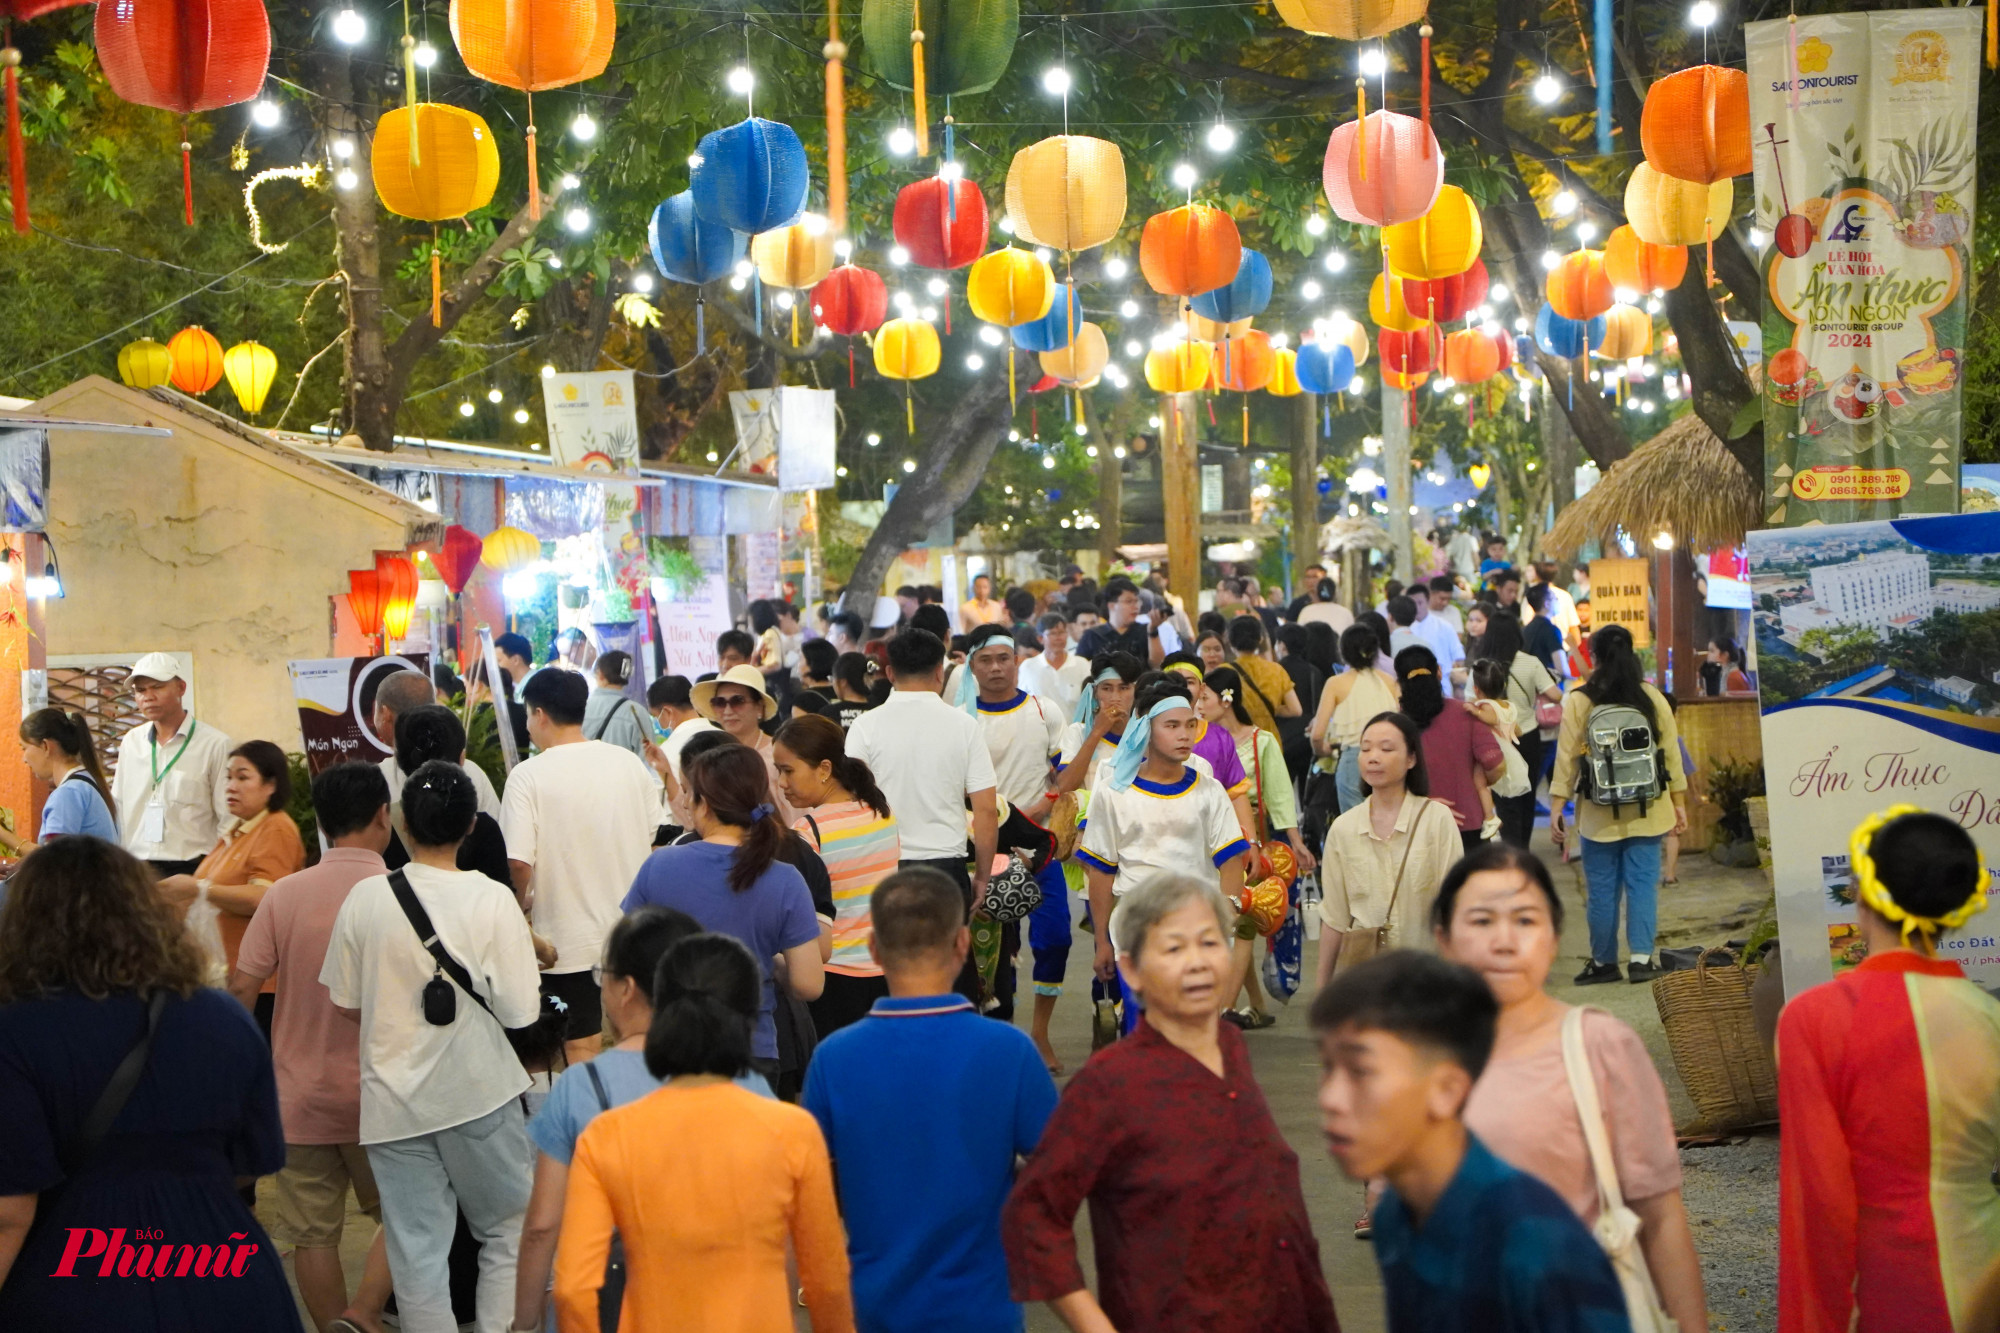 Ngày đầu khai mạc, lễ hội đã thu hút hàng nghìn lượt người đến tham dự và trải nghiệm các hoạt. động văn hoá, ăn uống